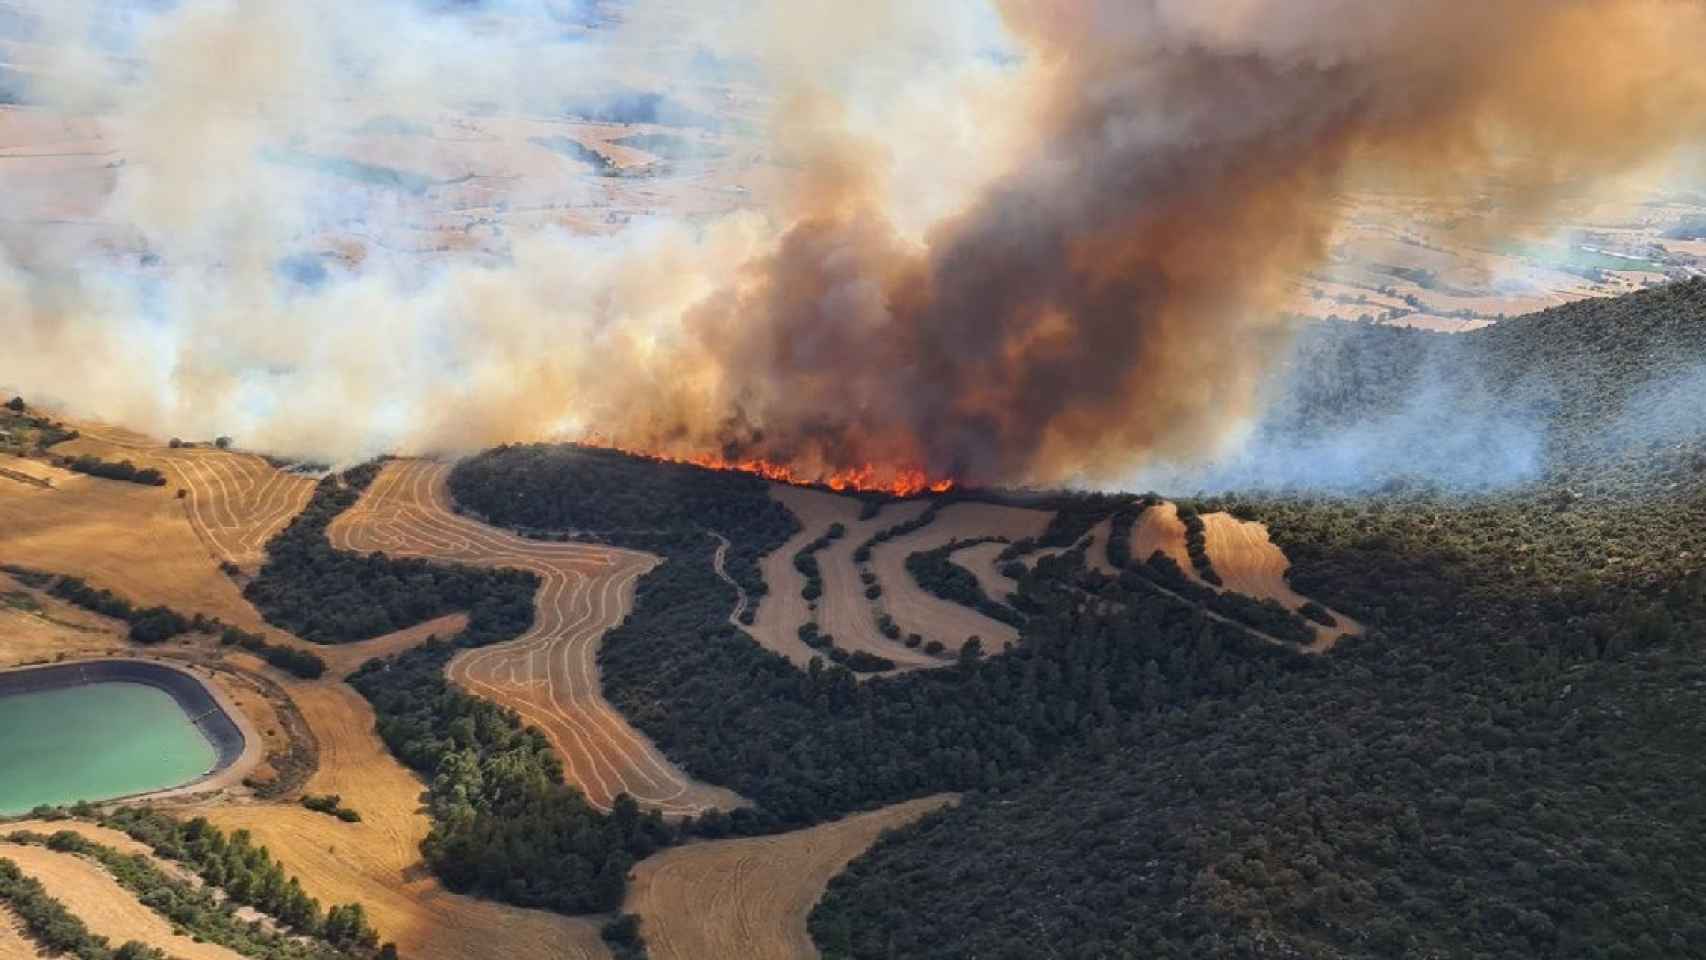 Incendio en Artesa de Segre, que arrasa ya 75 hectáreas de terreno agrícola y forestal / AGENTS RURALS